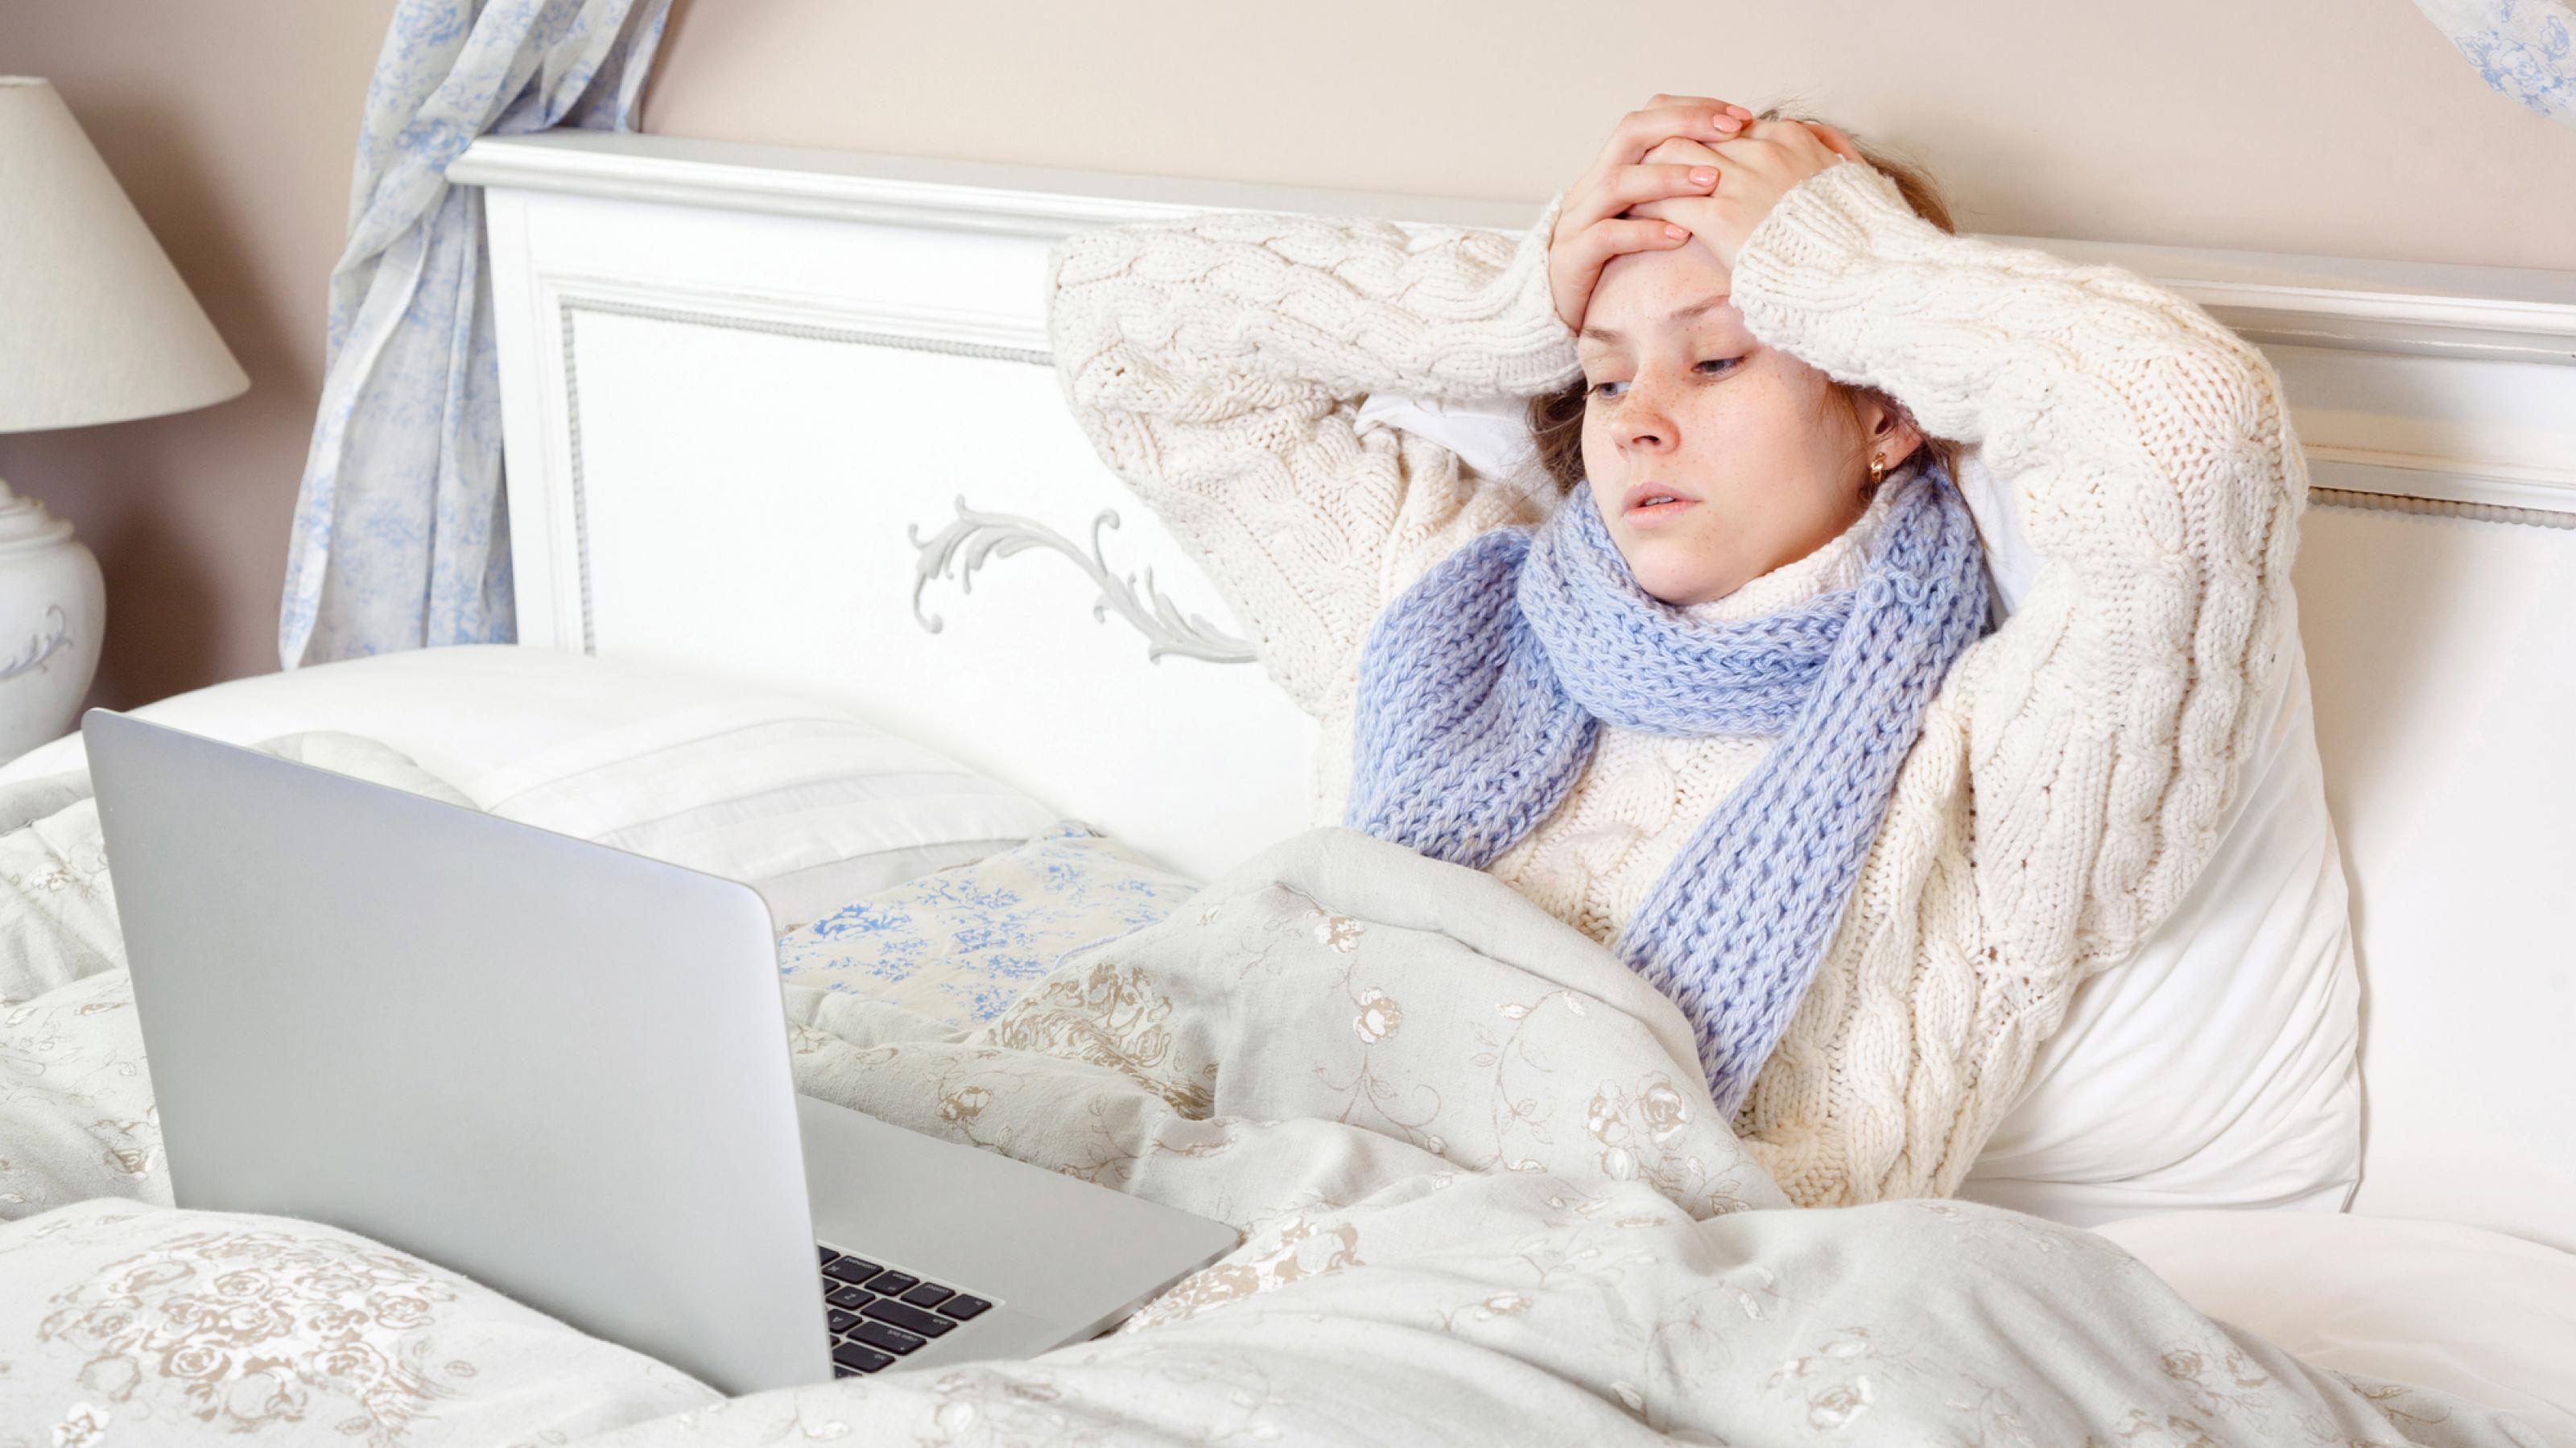 Eine kranke, erschöpft aussehende Frau liegt mit dem Laptop im Bett und versucht, trotz Krankheit ihre Arbeit zu erledigen.